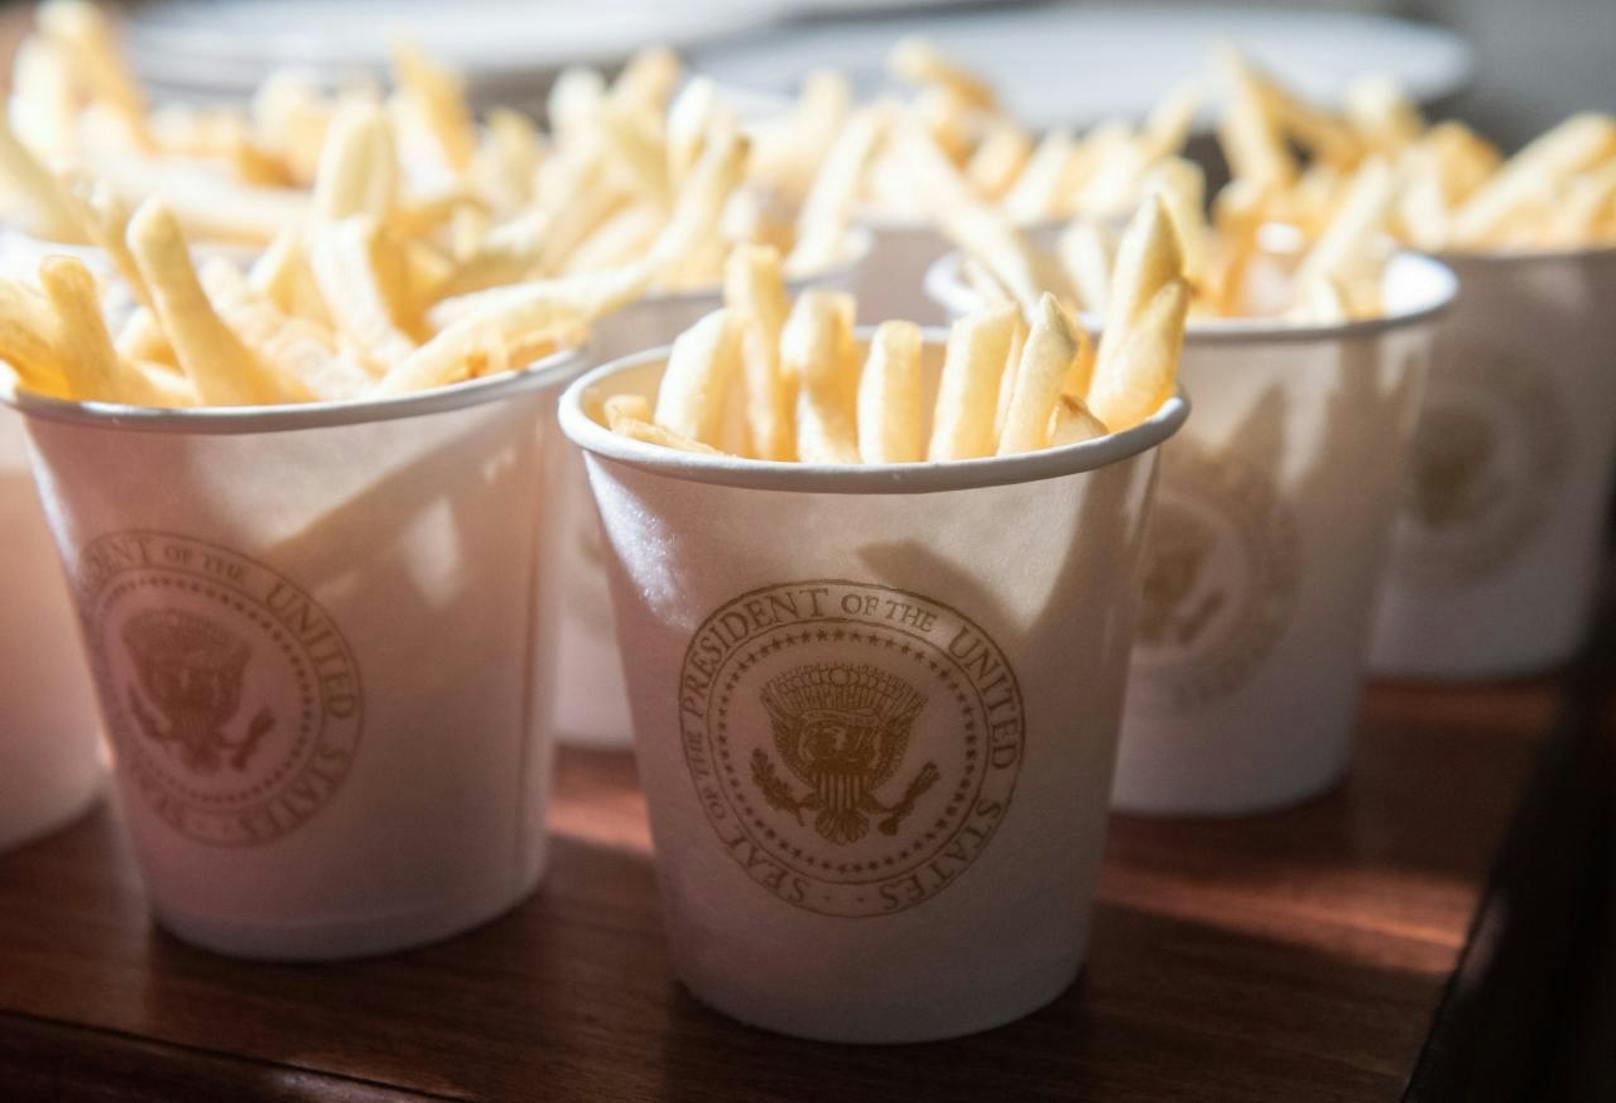 US-Präsident Donald Trump empfing die College-Football-Meistermannschaft Clemson Tigers im Weißen Haus. Weil die Köche aufgrund des Shutdown beurlaubt sind, ließ der Präsident auf eigene Rechnung Fast Food liefern und auftischen.